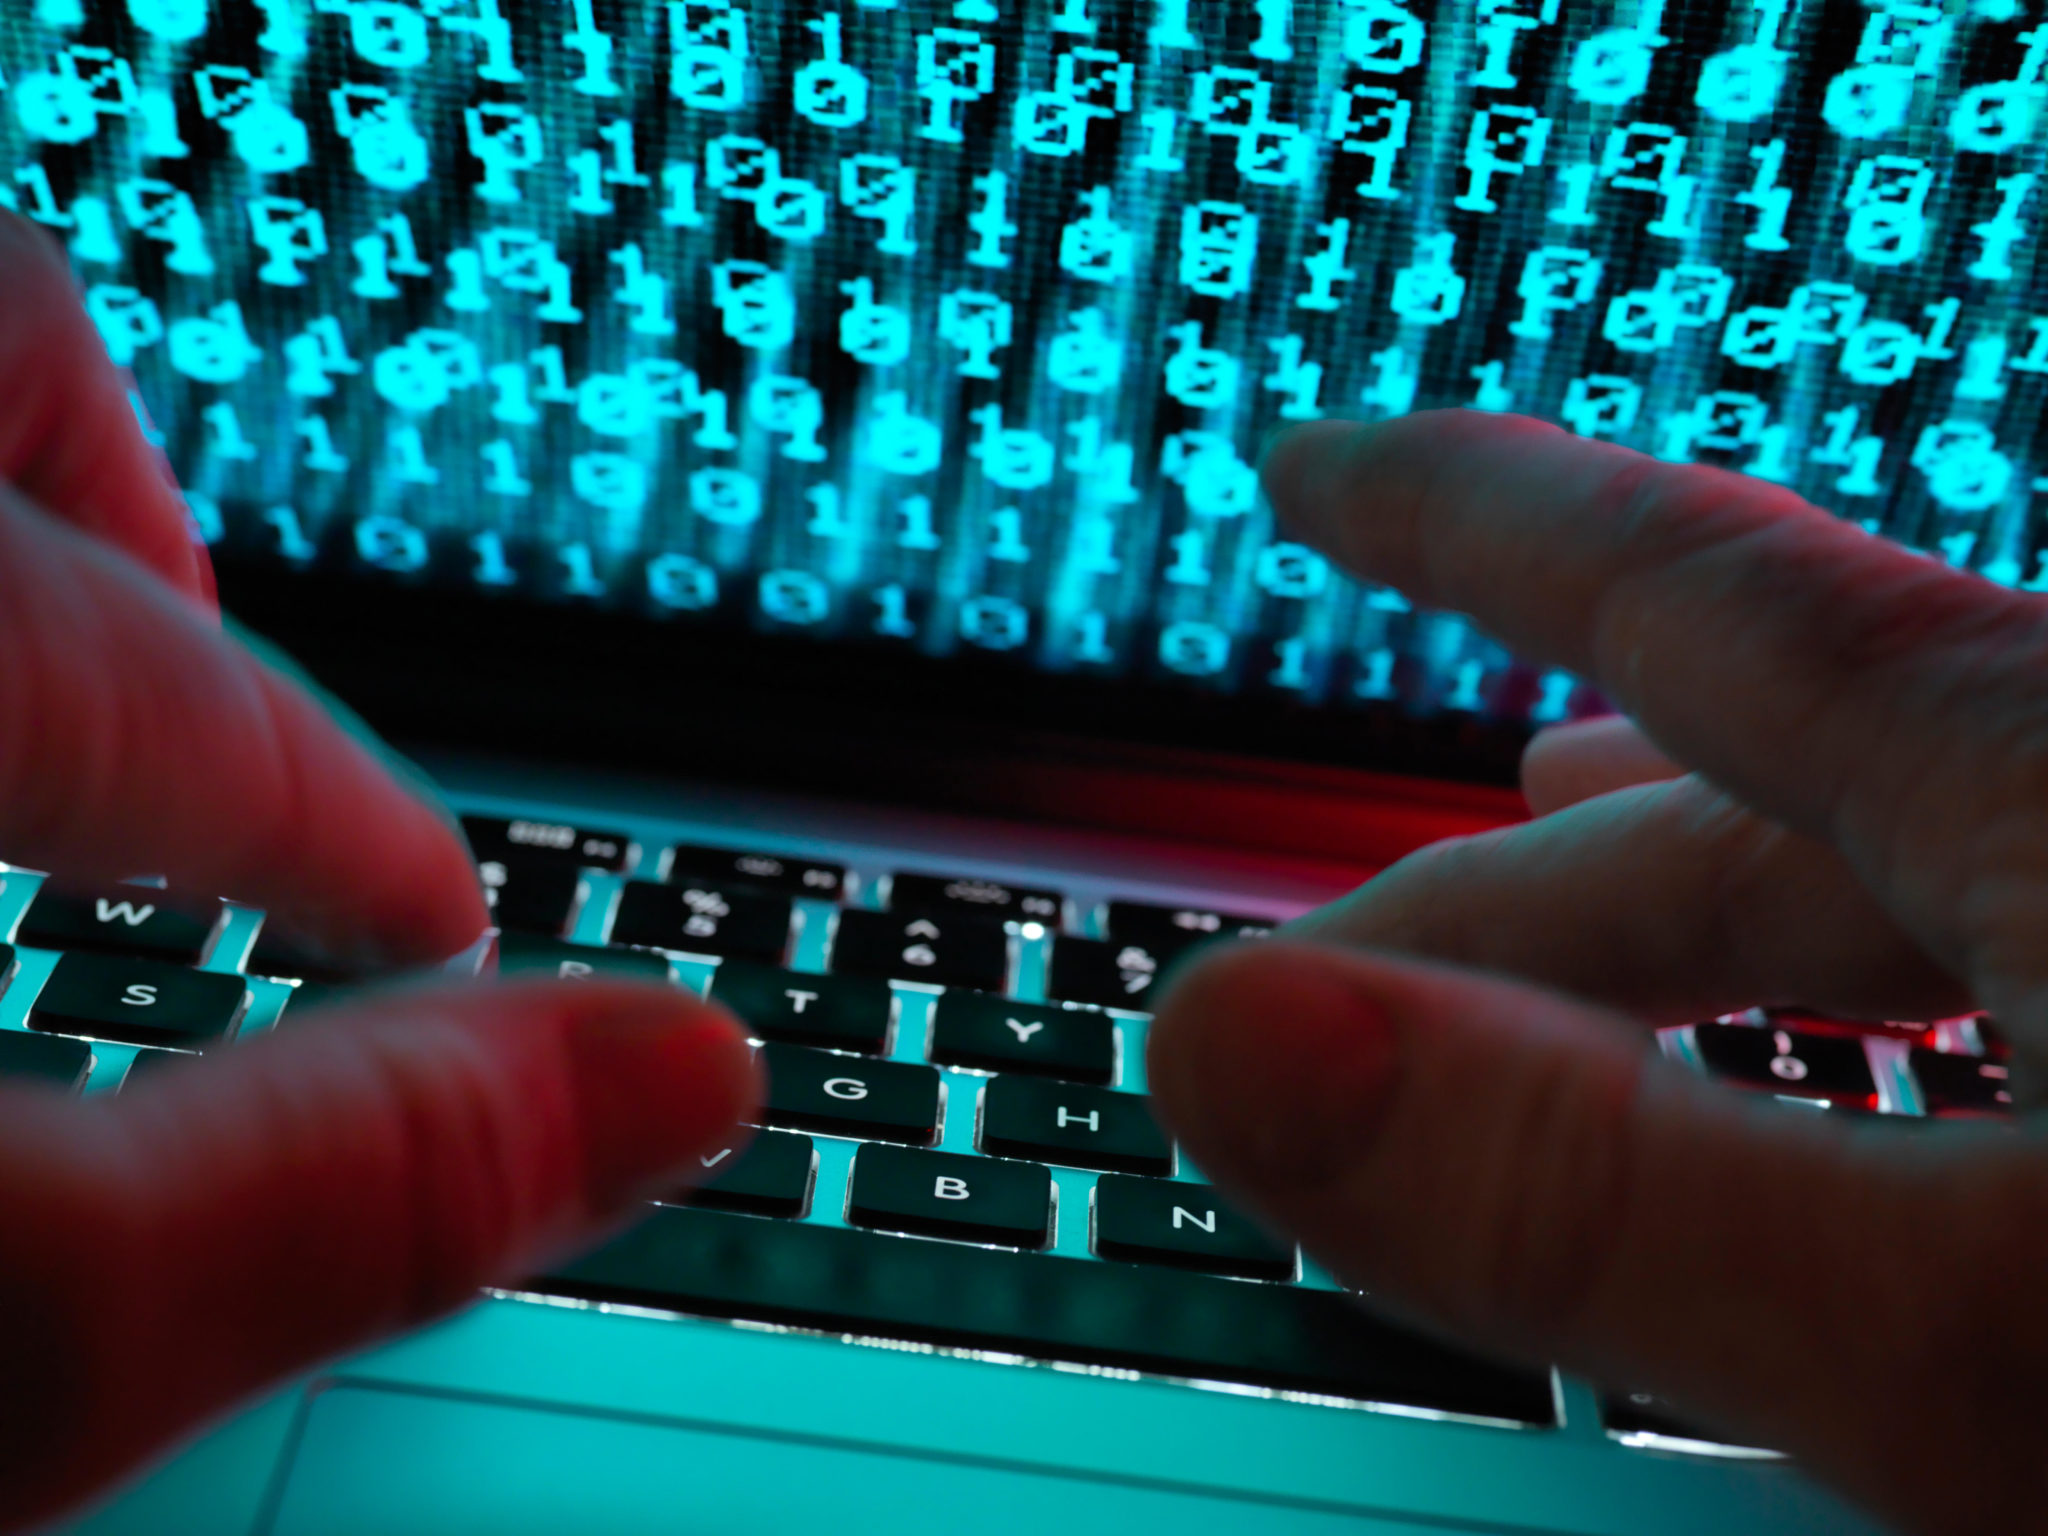 A hacker coding a computer virus, 29-3-19.